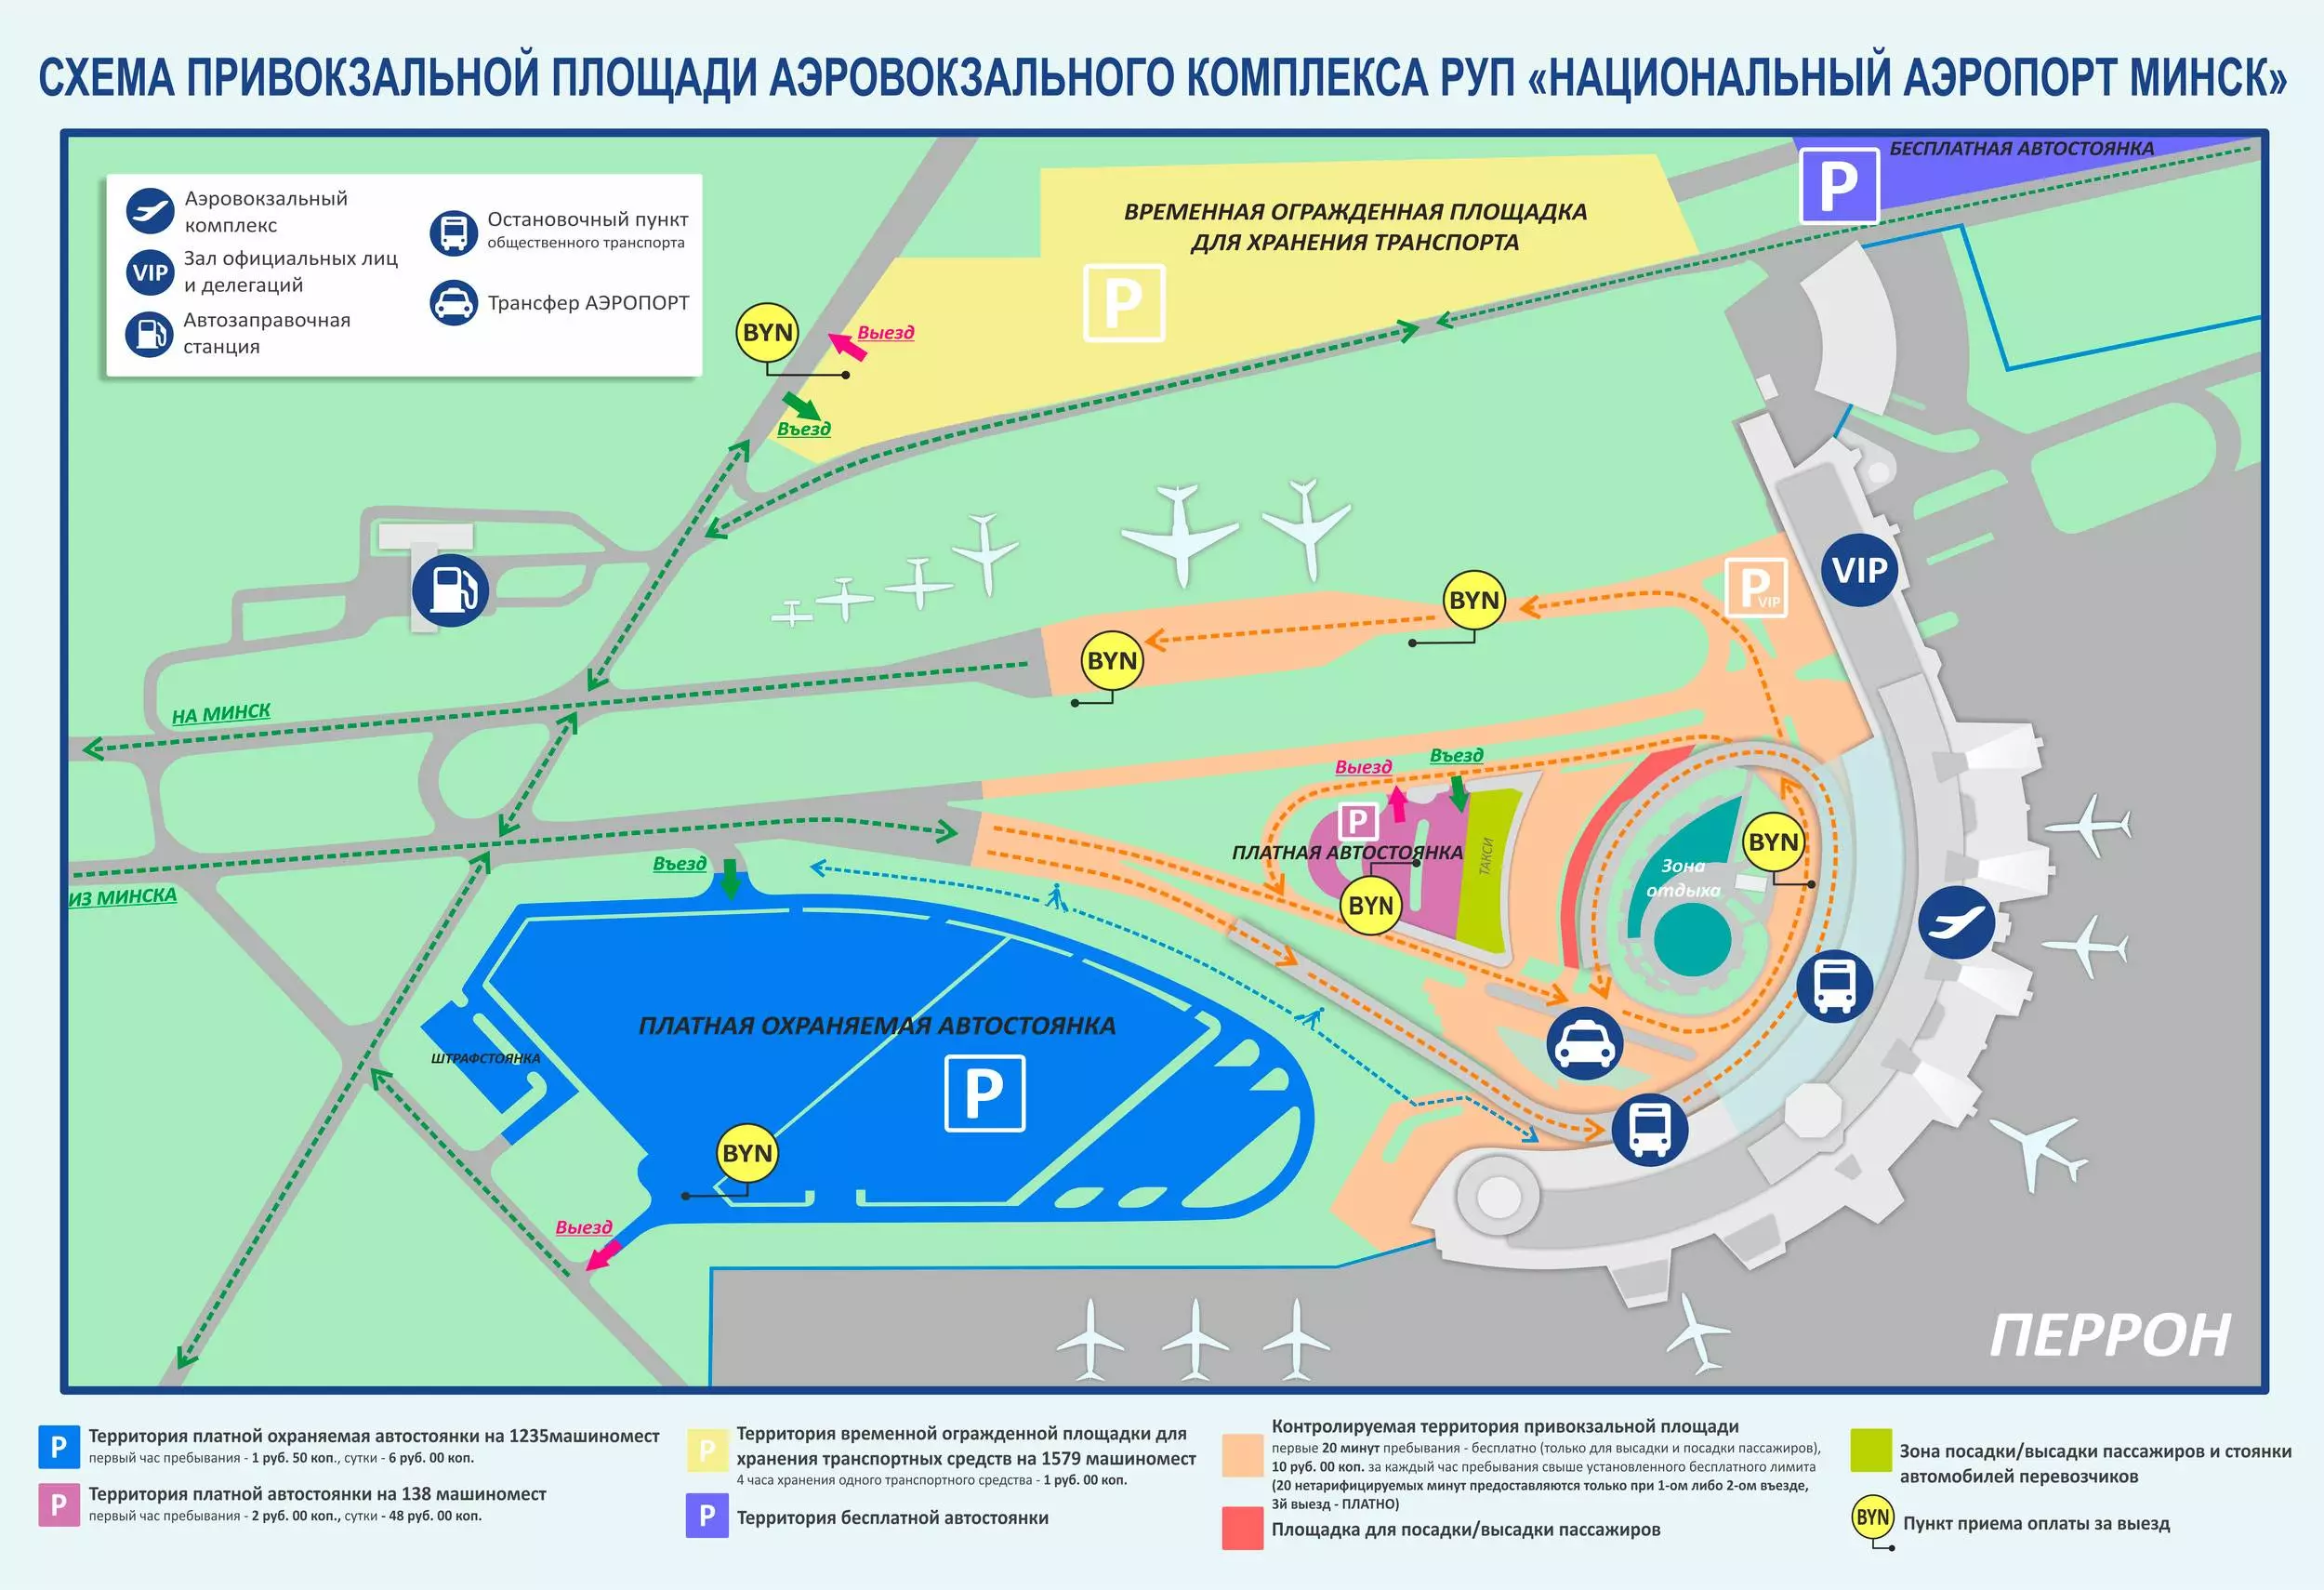 Национальный аэропорт минск-2